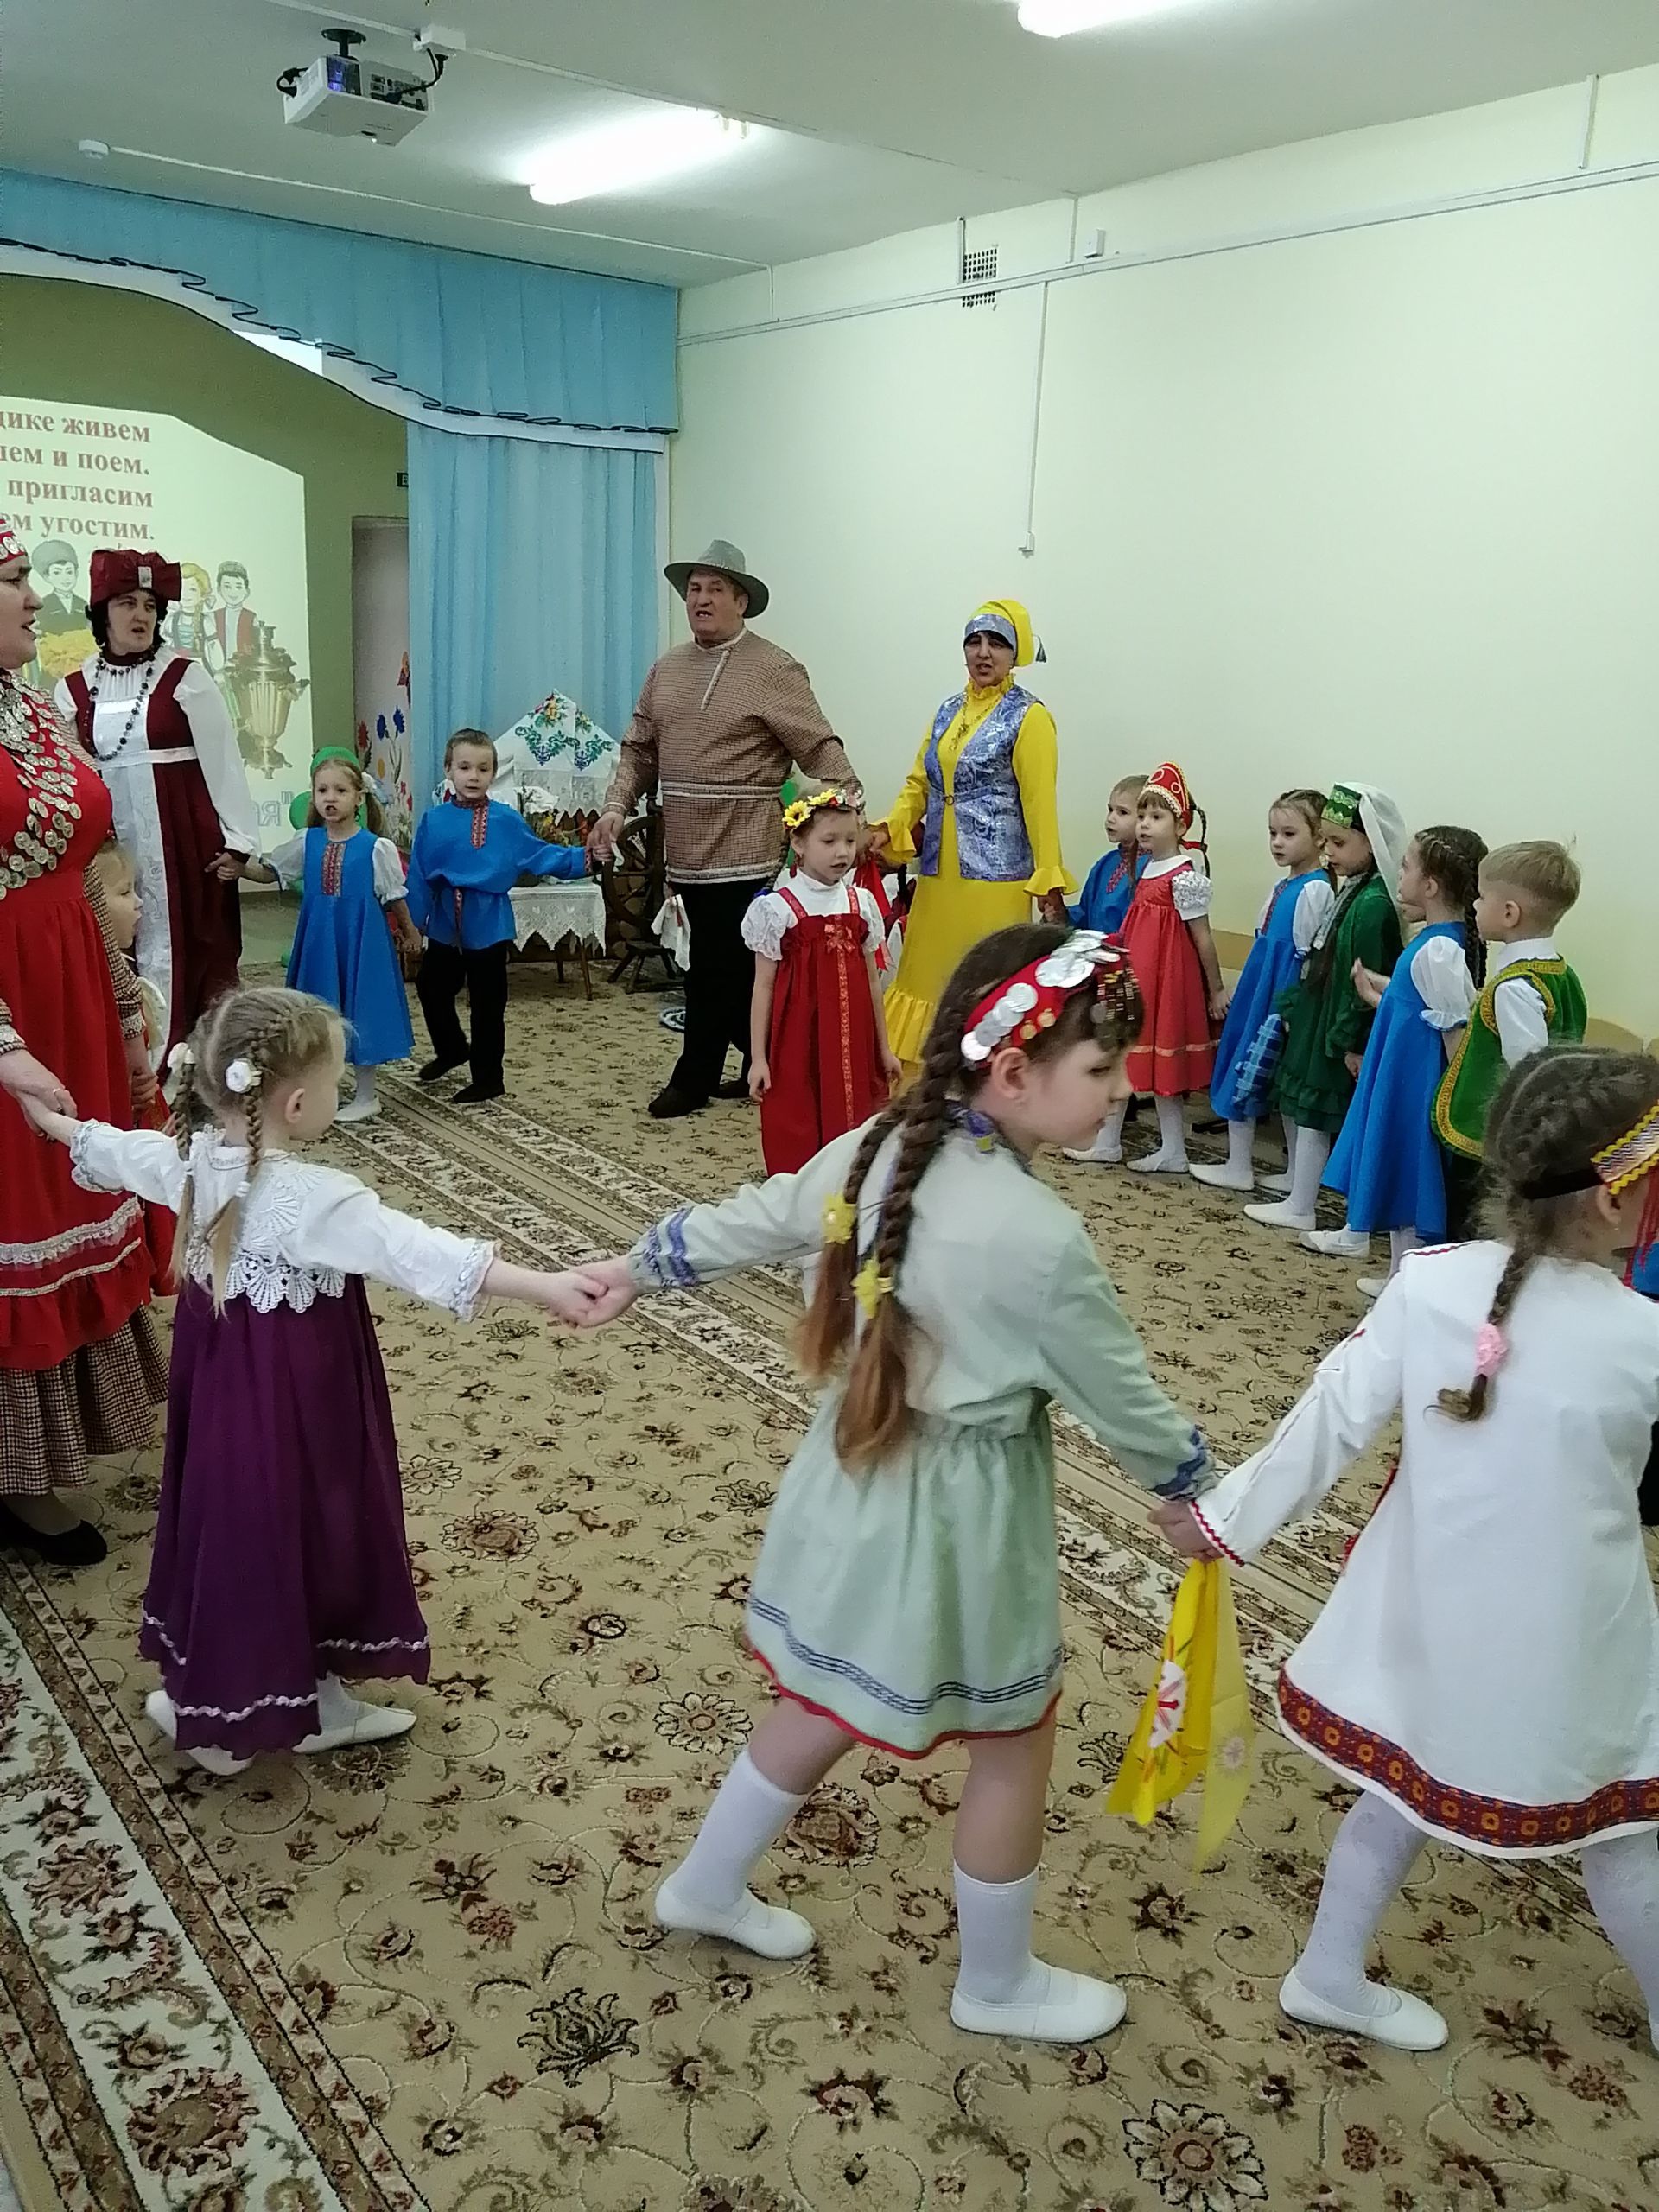 В Чистопольском районе продолжается месячник кряшенской культуры